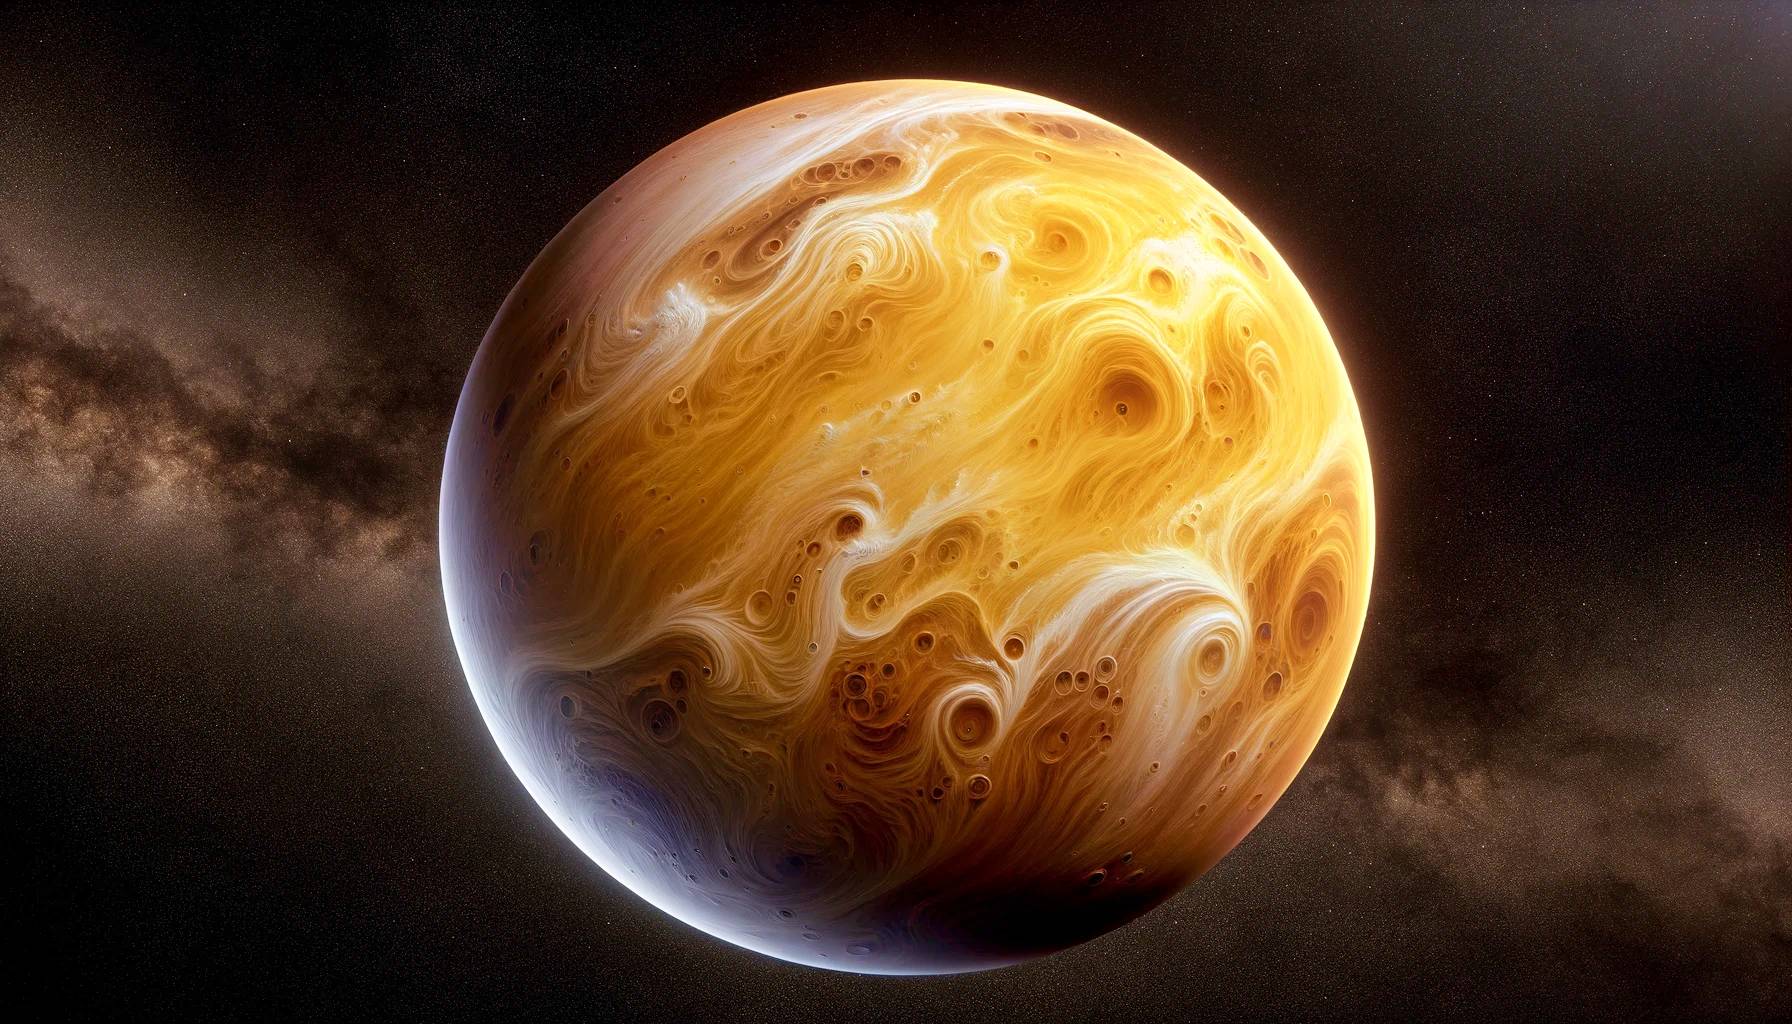 Planeetta Venus MAHTAVA löytö Ensimmäinen ihmiskunta